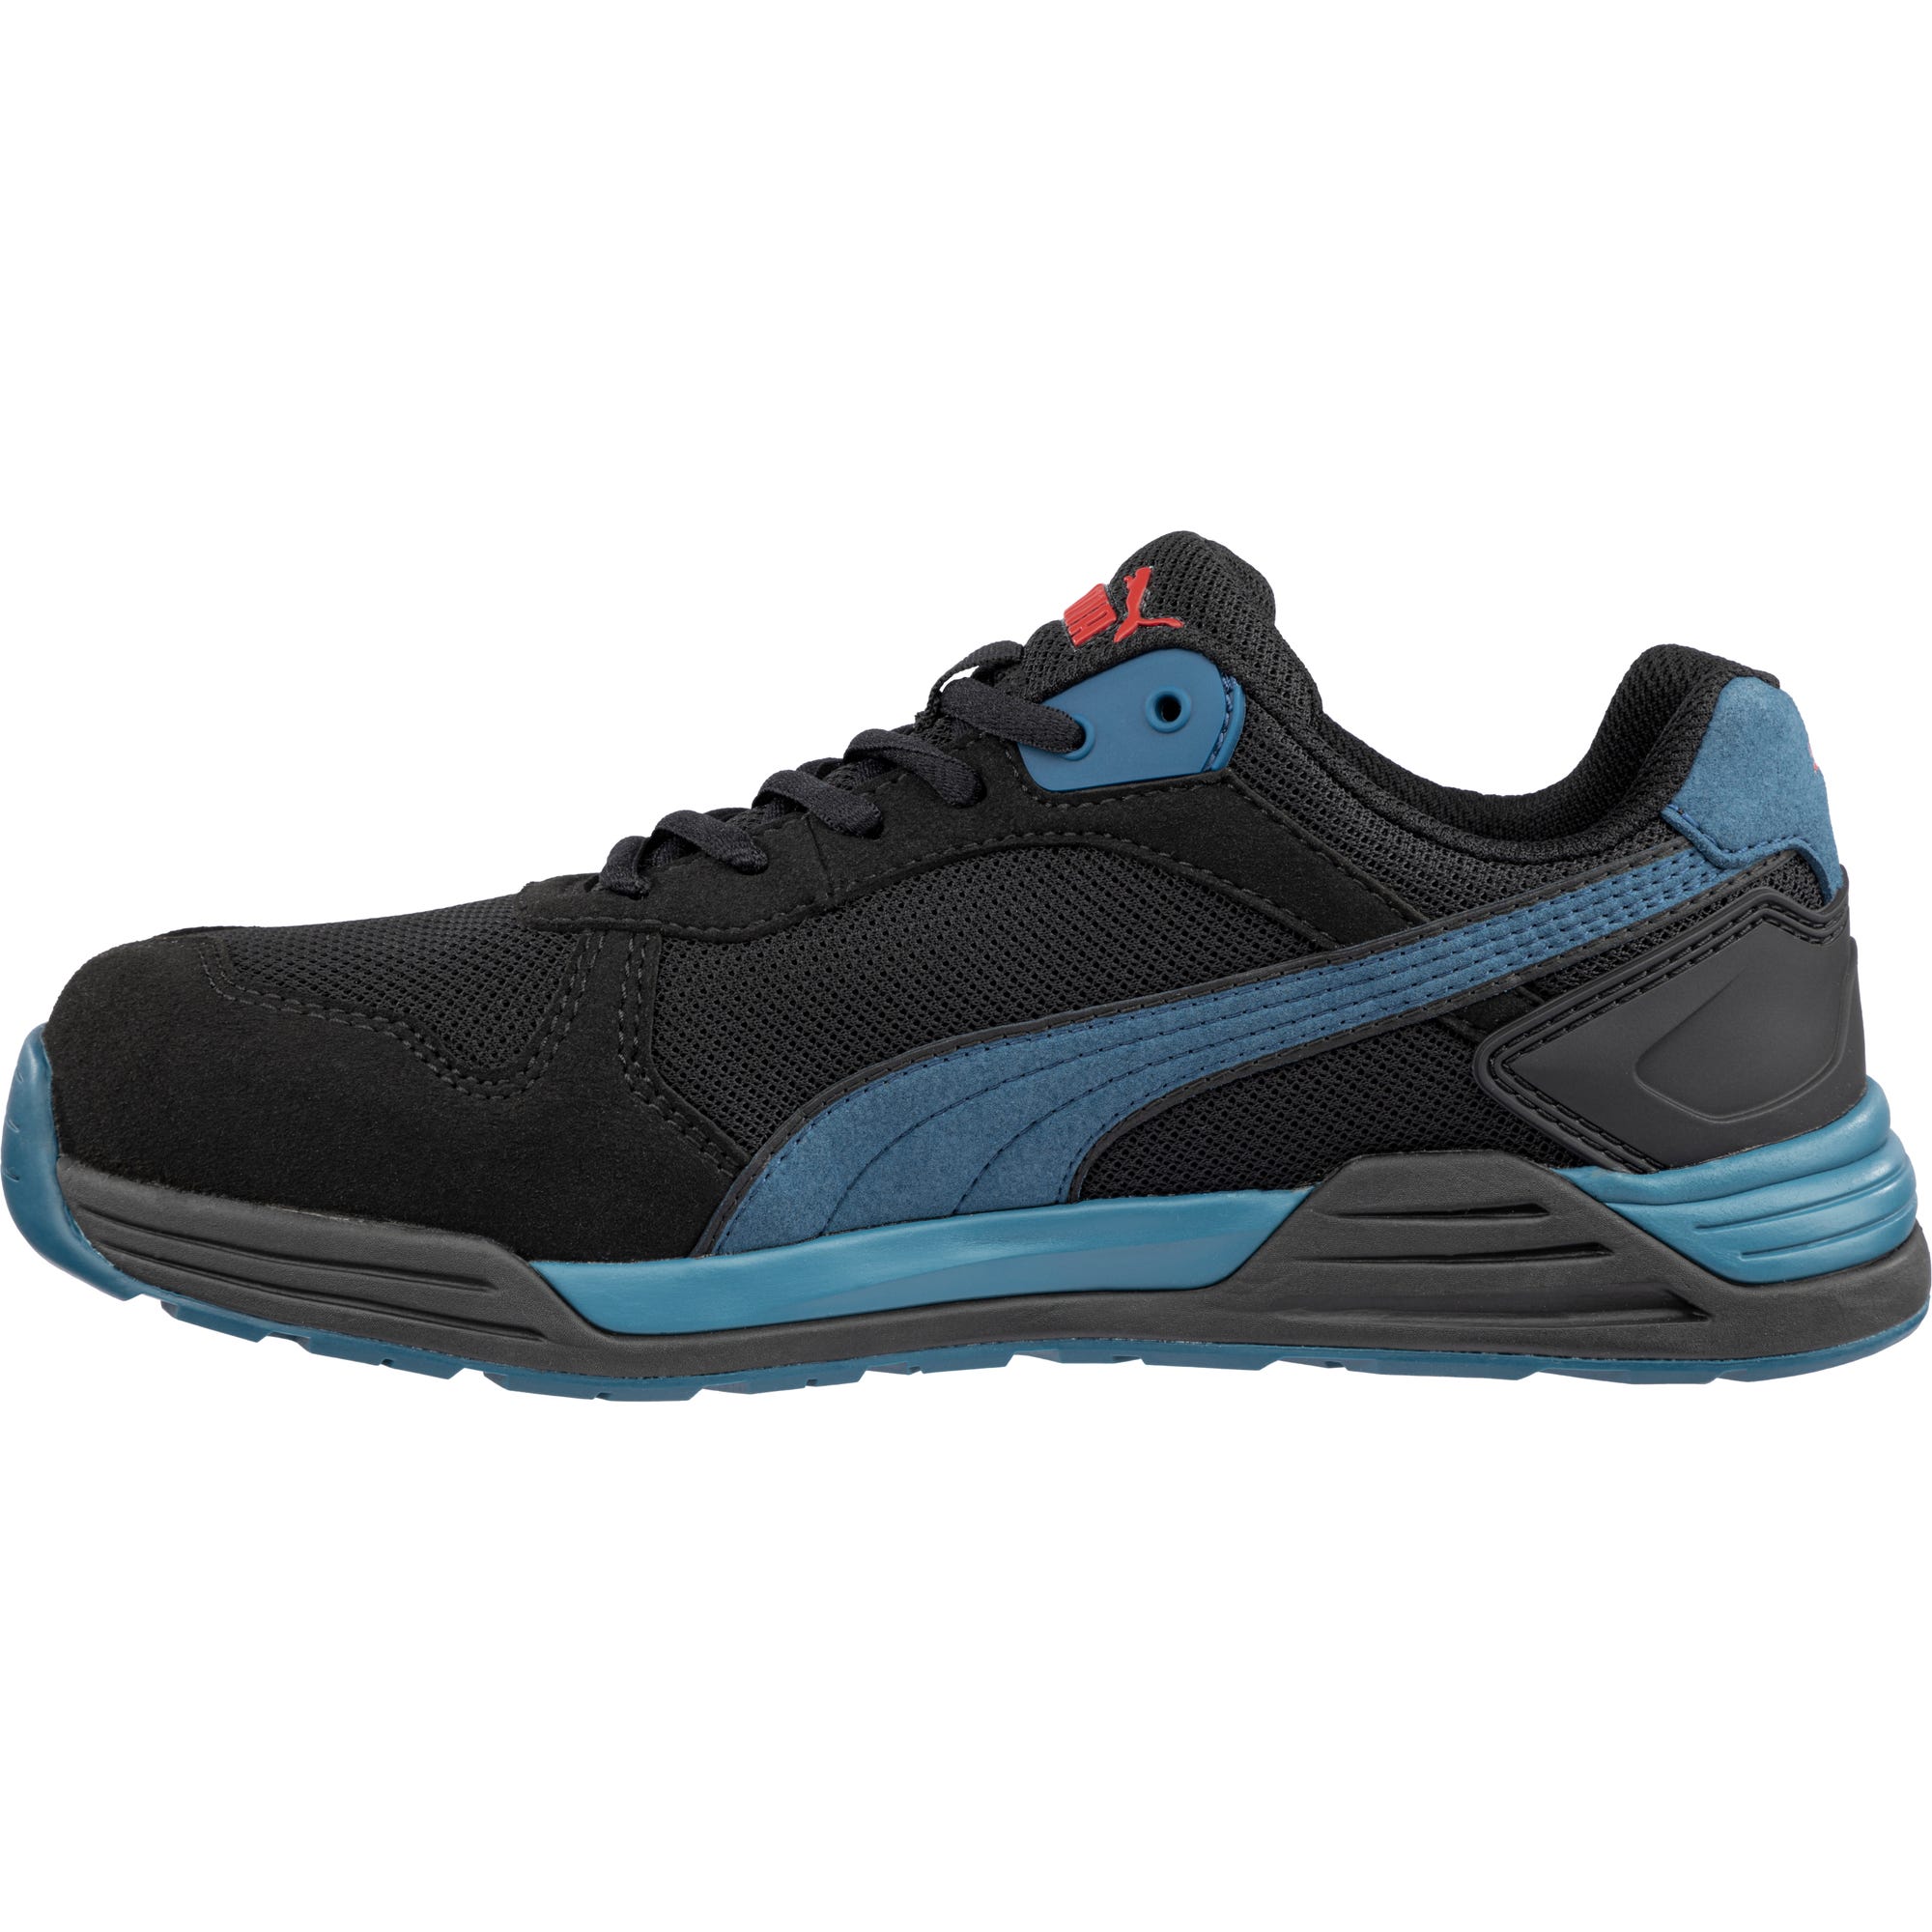 Chaussures de sécurité FRONTSIDE LOW S1P ESD HRO SRC - bleu/noir 39 0